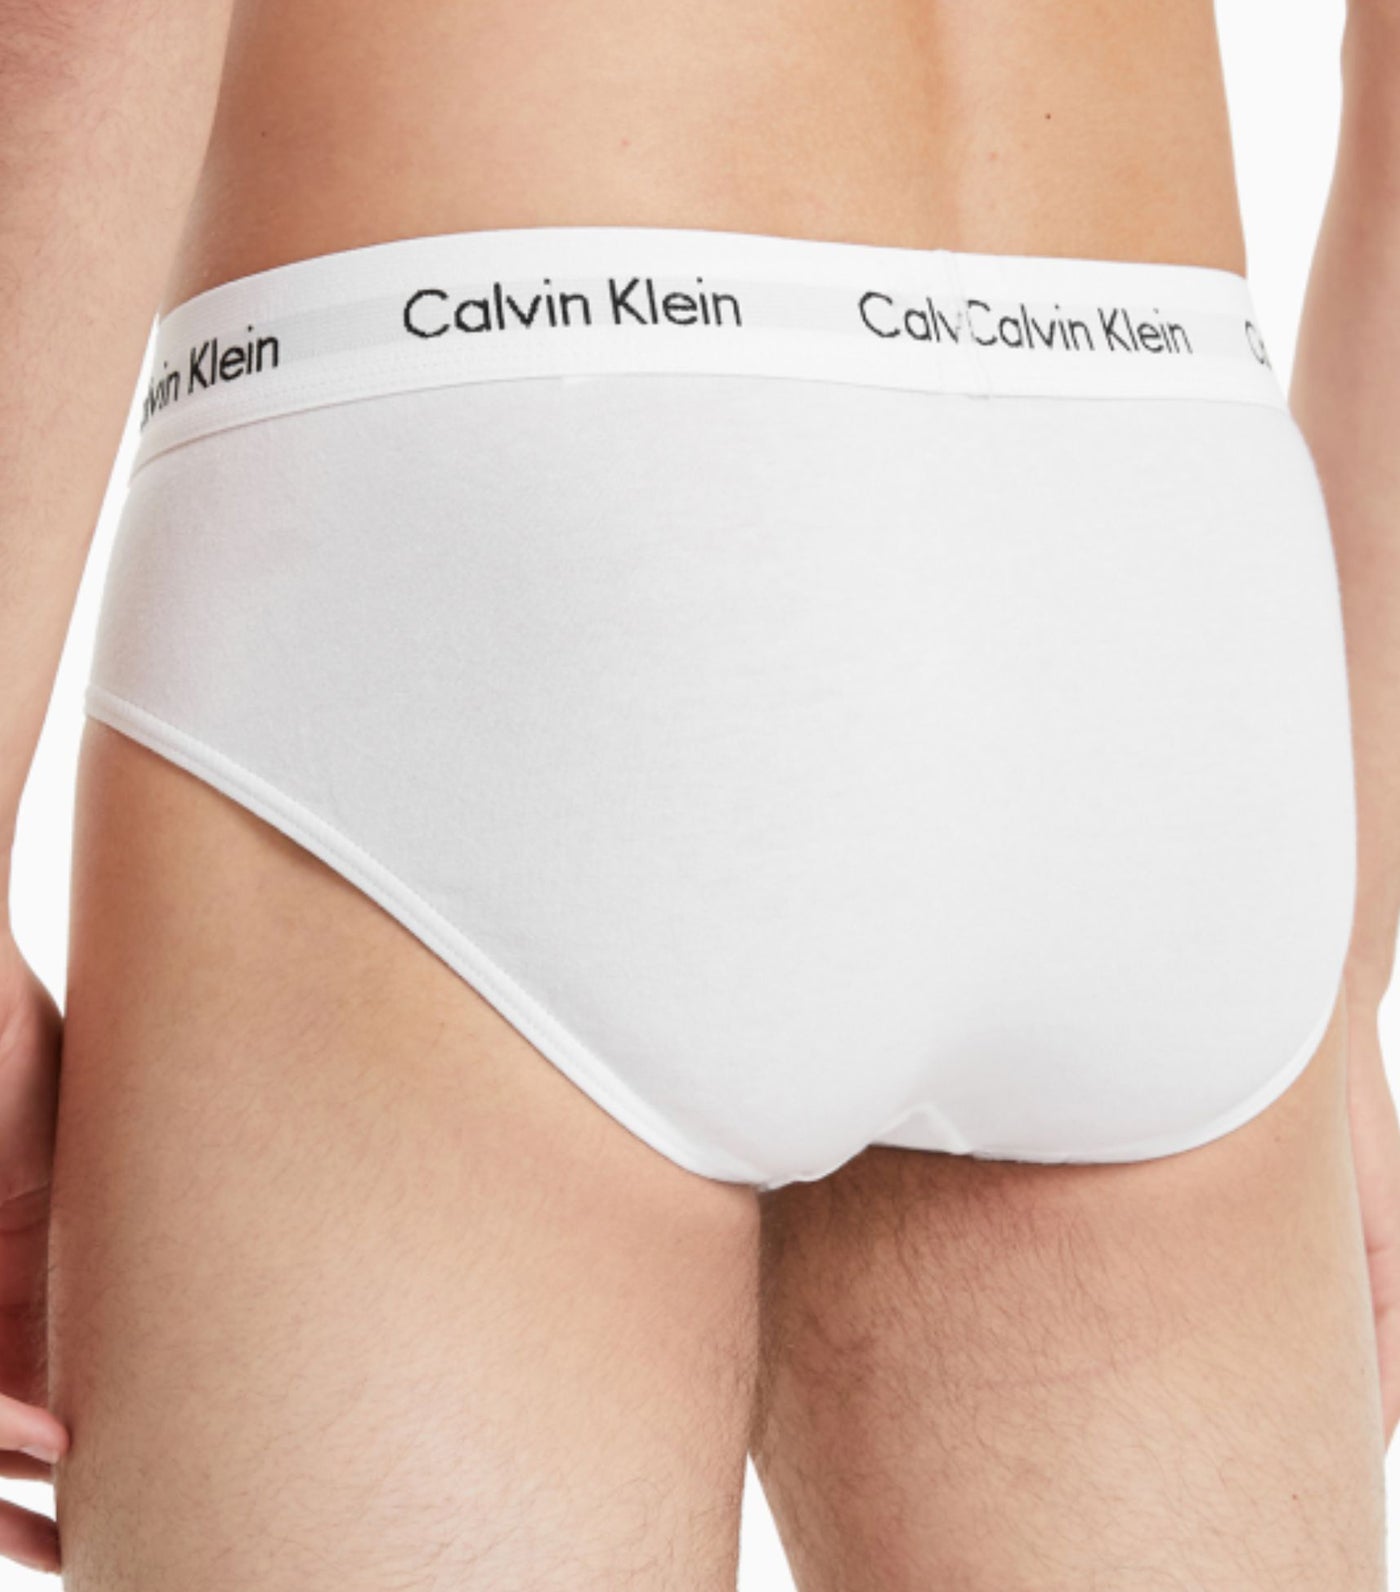 Mens Calvin Klein multi Modern Structure Hip Briefs (Pack of 3